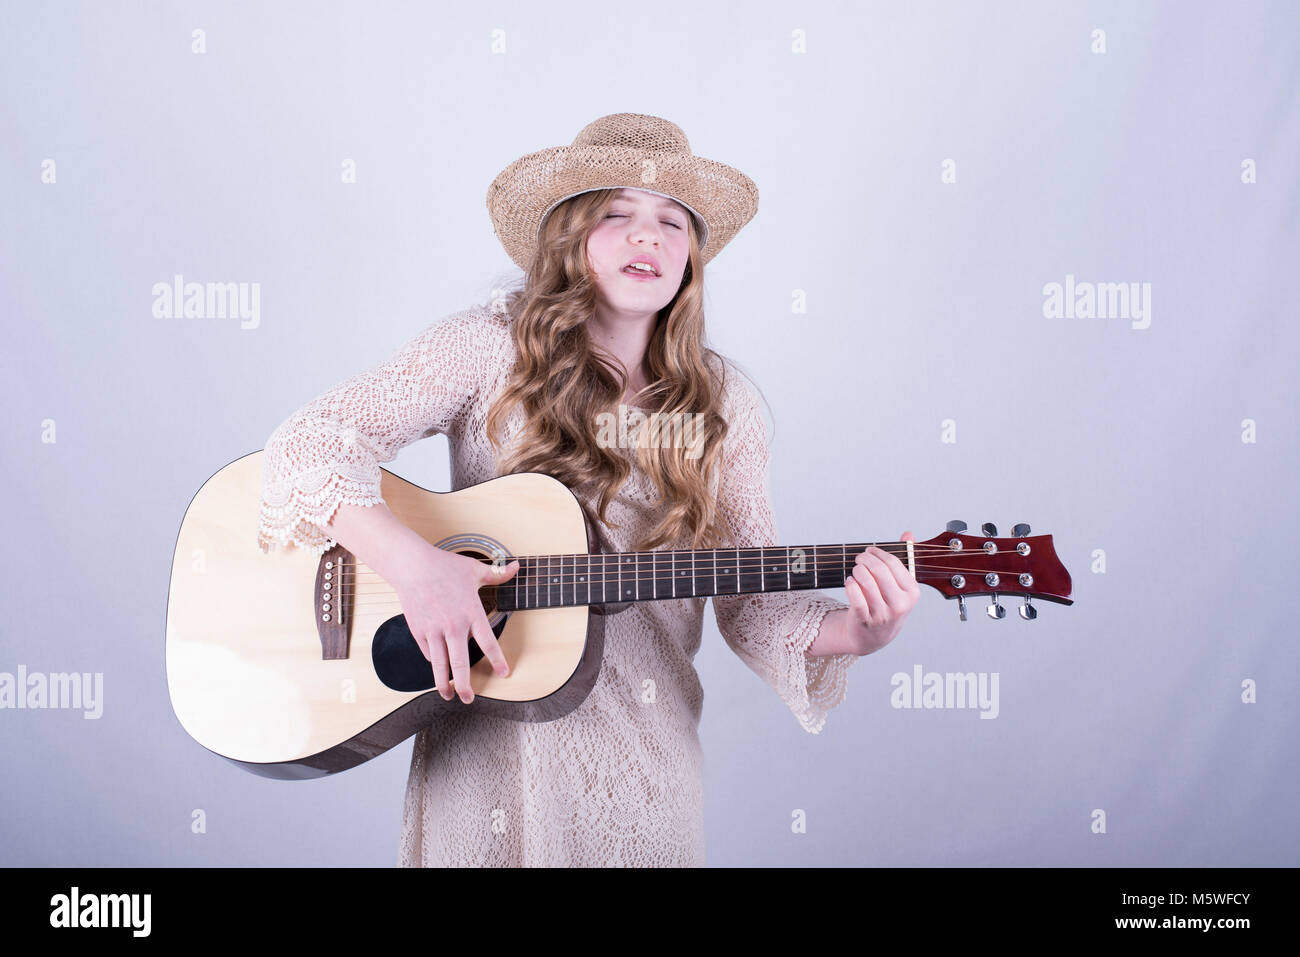 Der 12-jährige Mädchen mit langen, schmutzig blonden Haar, trug Stroh Hut singen mit geschlossenen Augen, spielen Akustische 6-saitige Gitarre, weißer Hintergrund Stockfoto